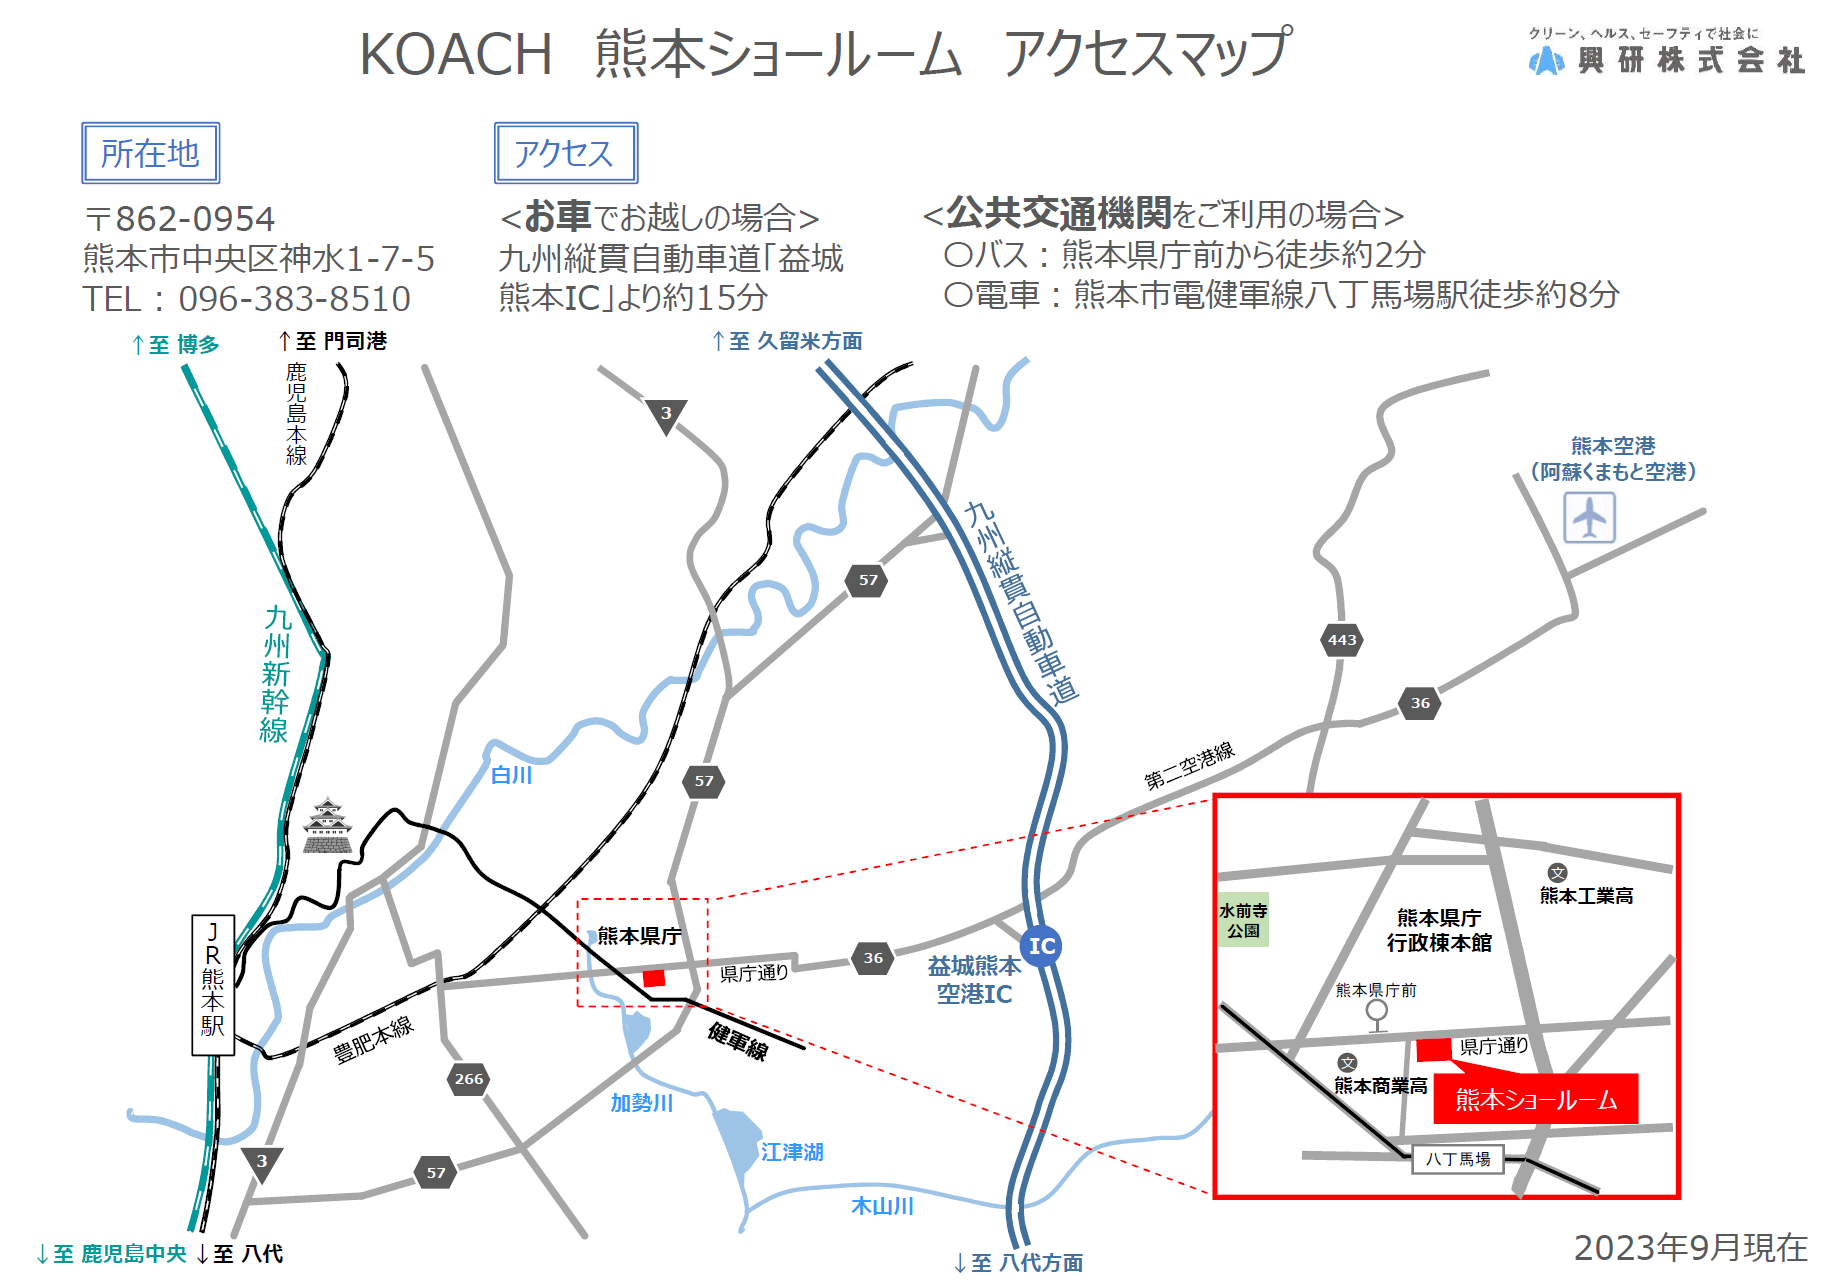 興研 KOACH 熊本ショールーム開設のお知らせ